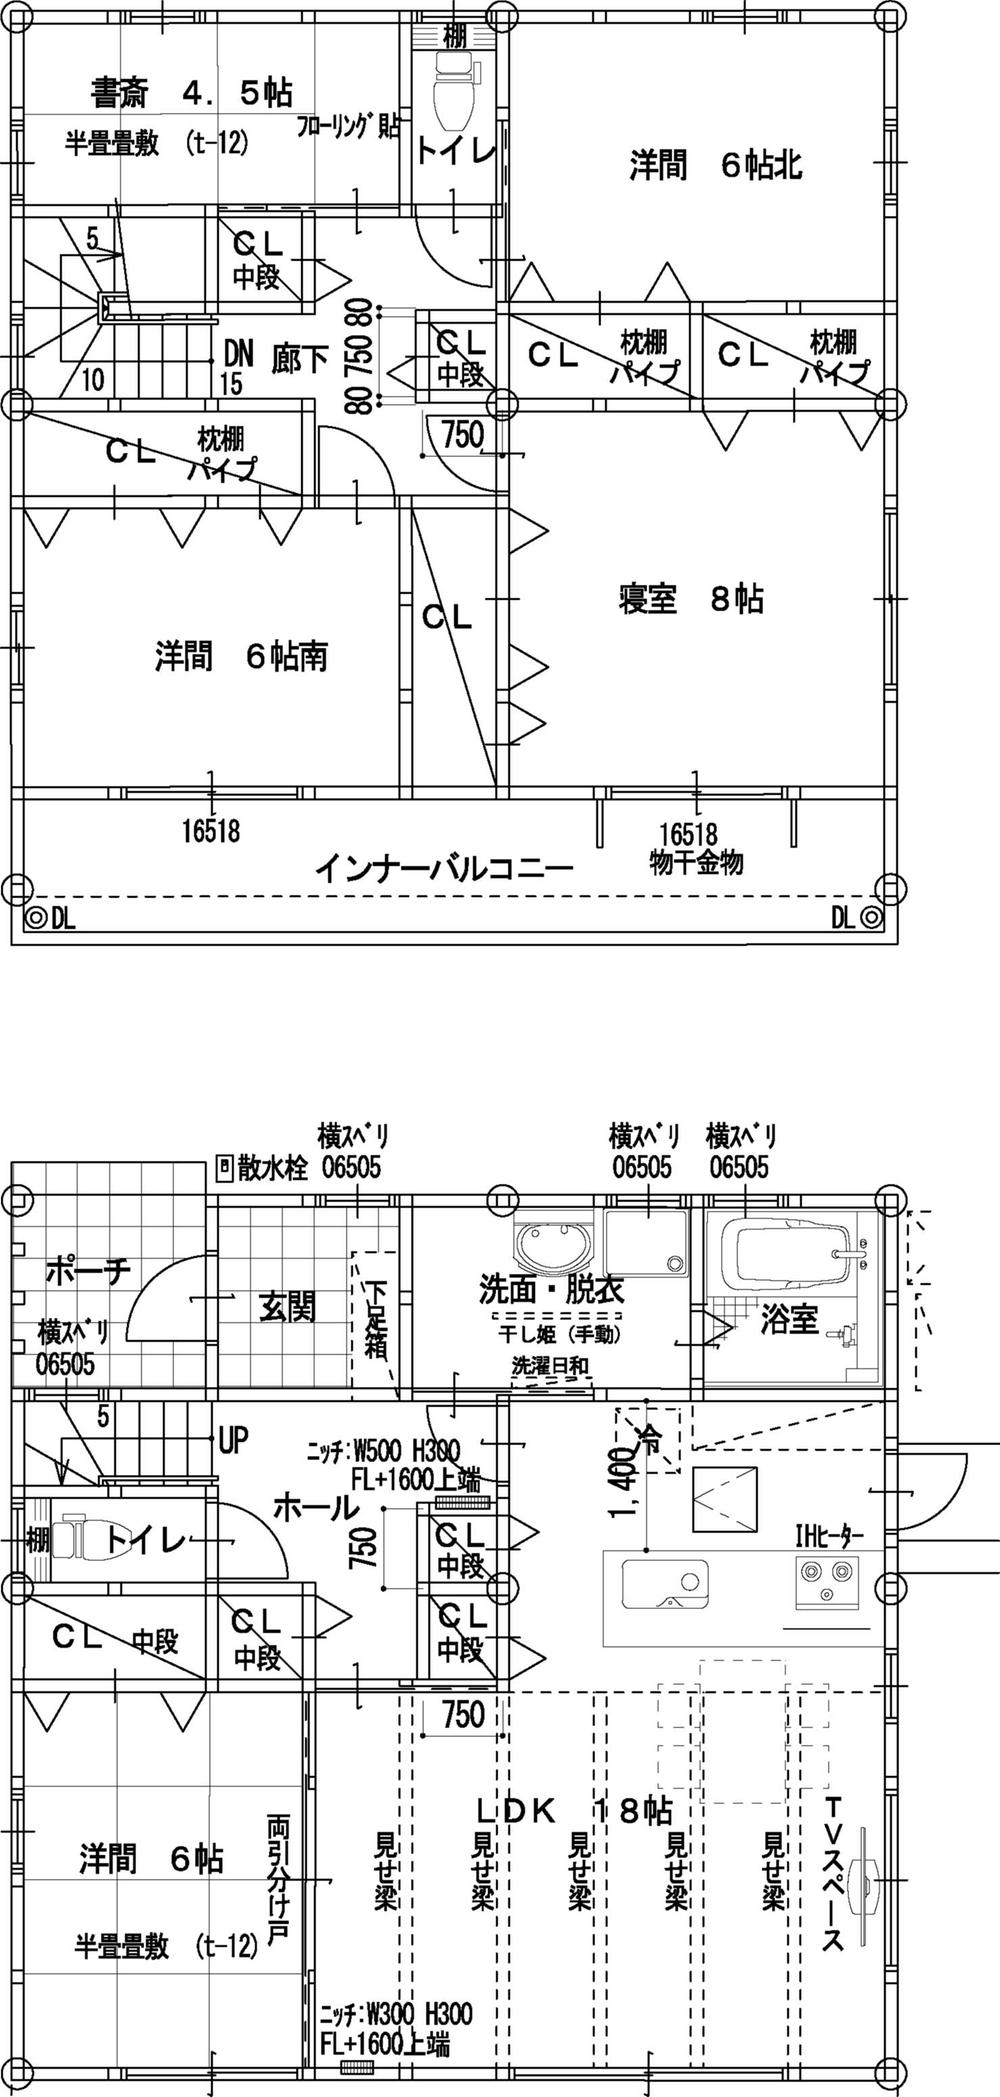 Floor plan. 21.9 million yen, 4LDK + S (storeroom), Land area 166.04 sq m , Building area 123.4 sq m Floor